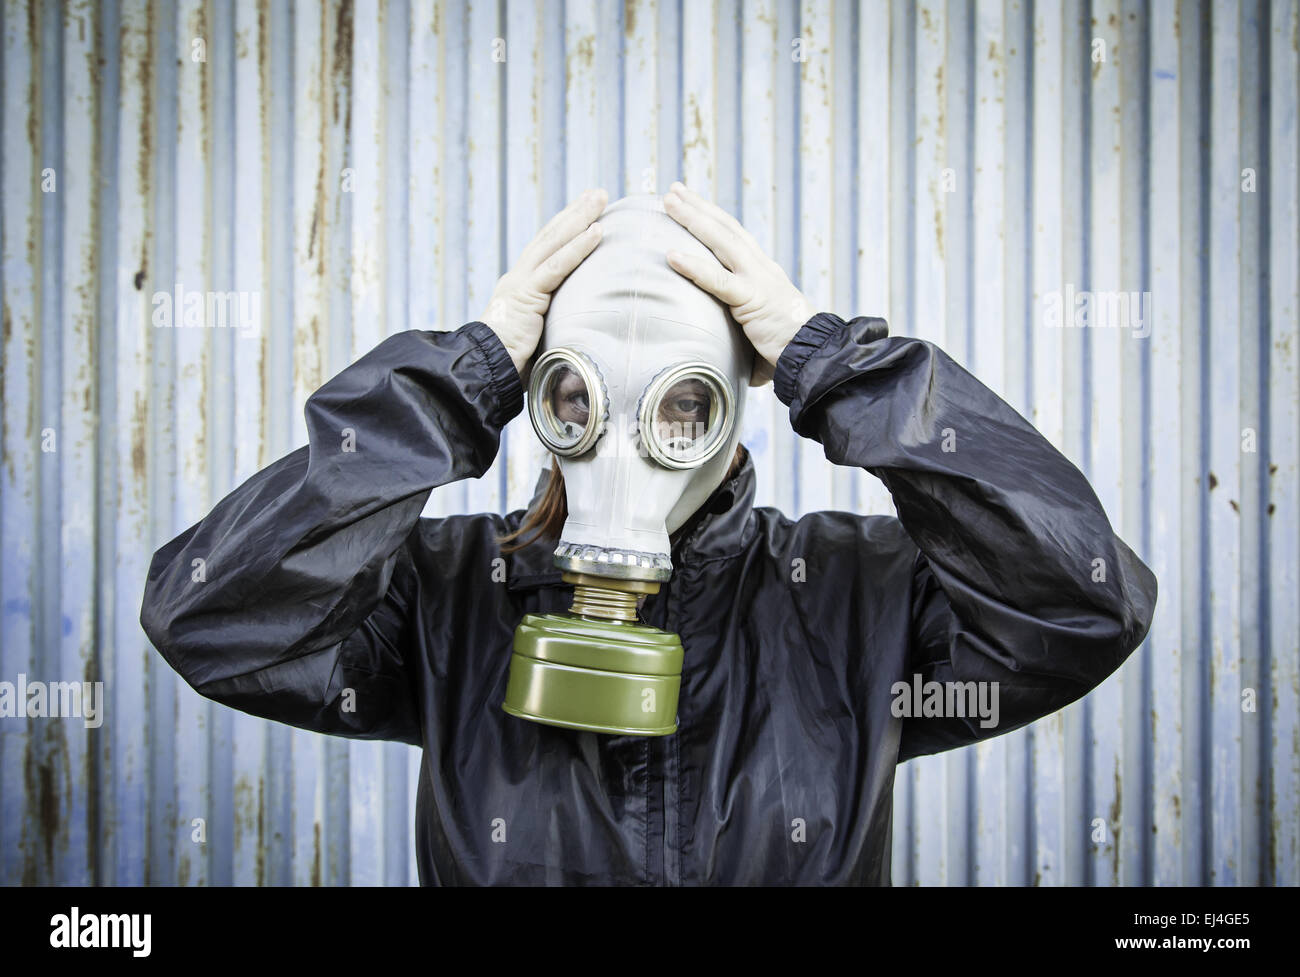 473 photos et images de Costume Gas Mask - Getty Images